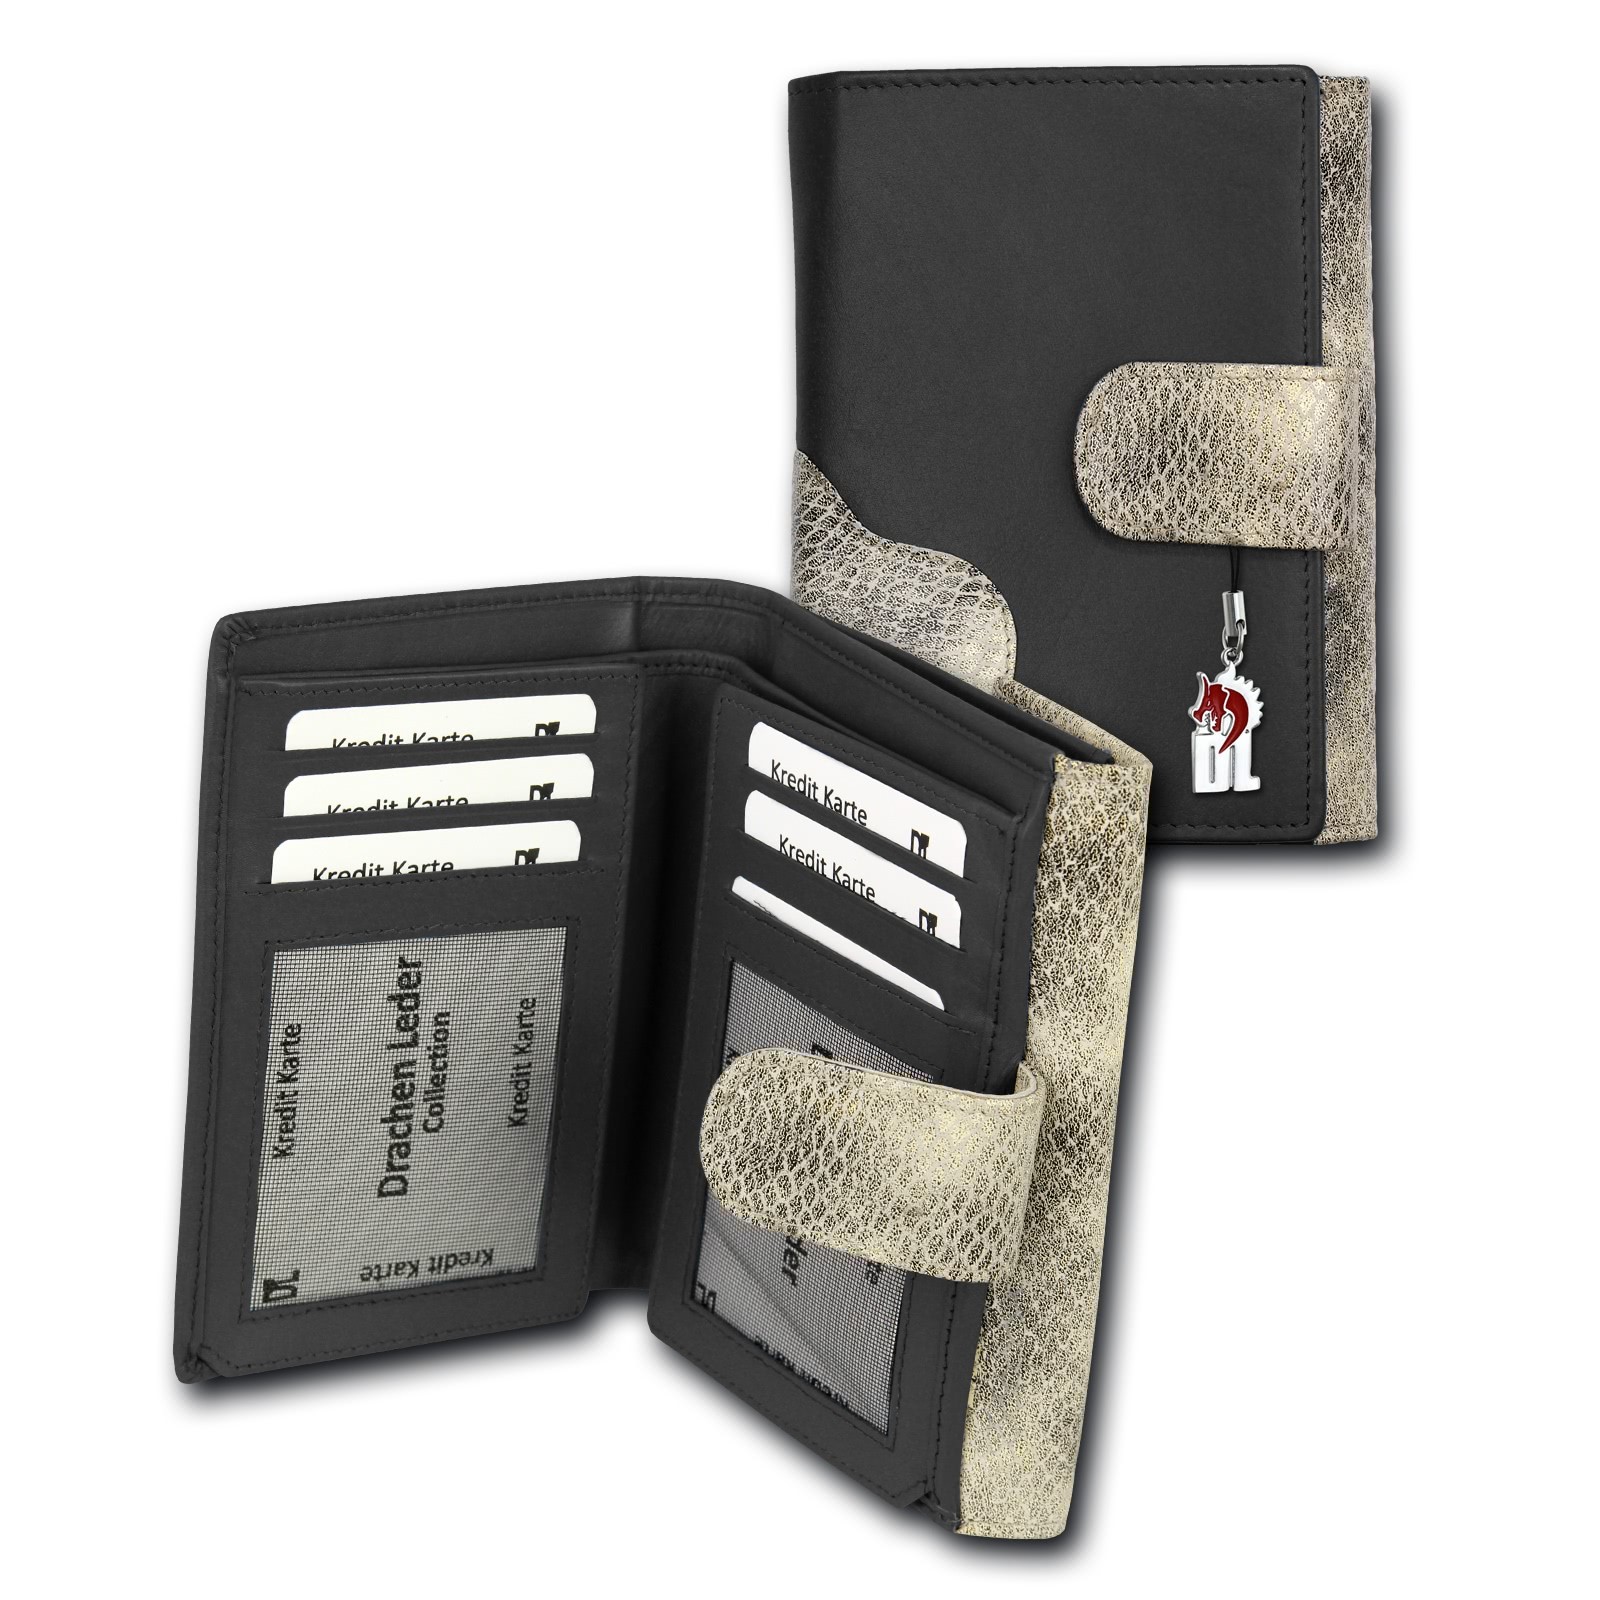 Portemonnaie Hochformat Leder schwarz, grau Damen Geldbörse DrachenLeder OPS700S